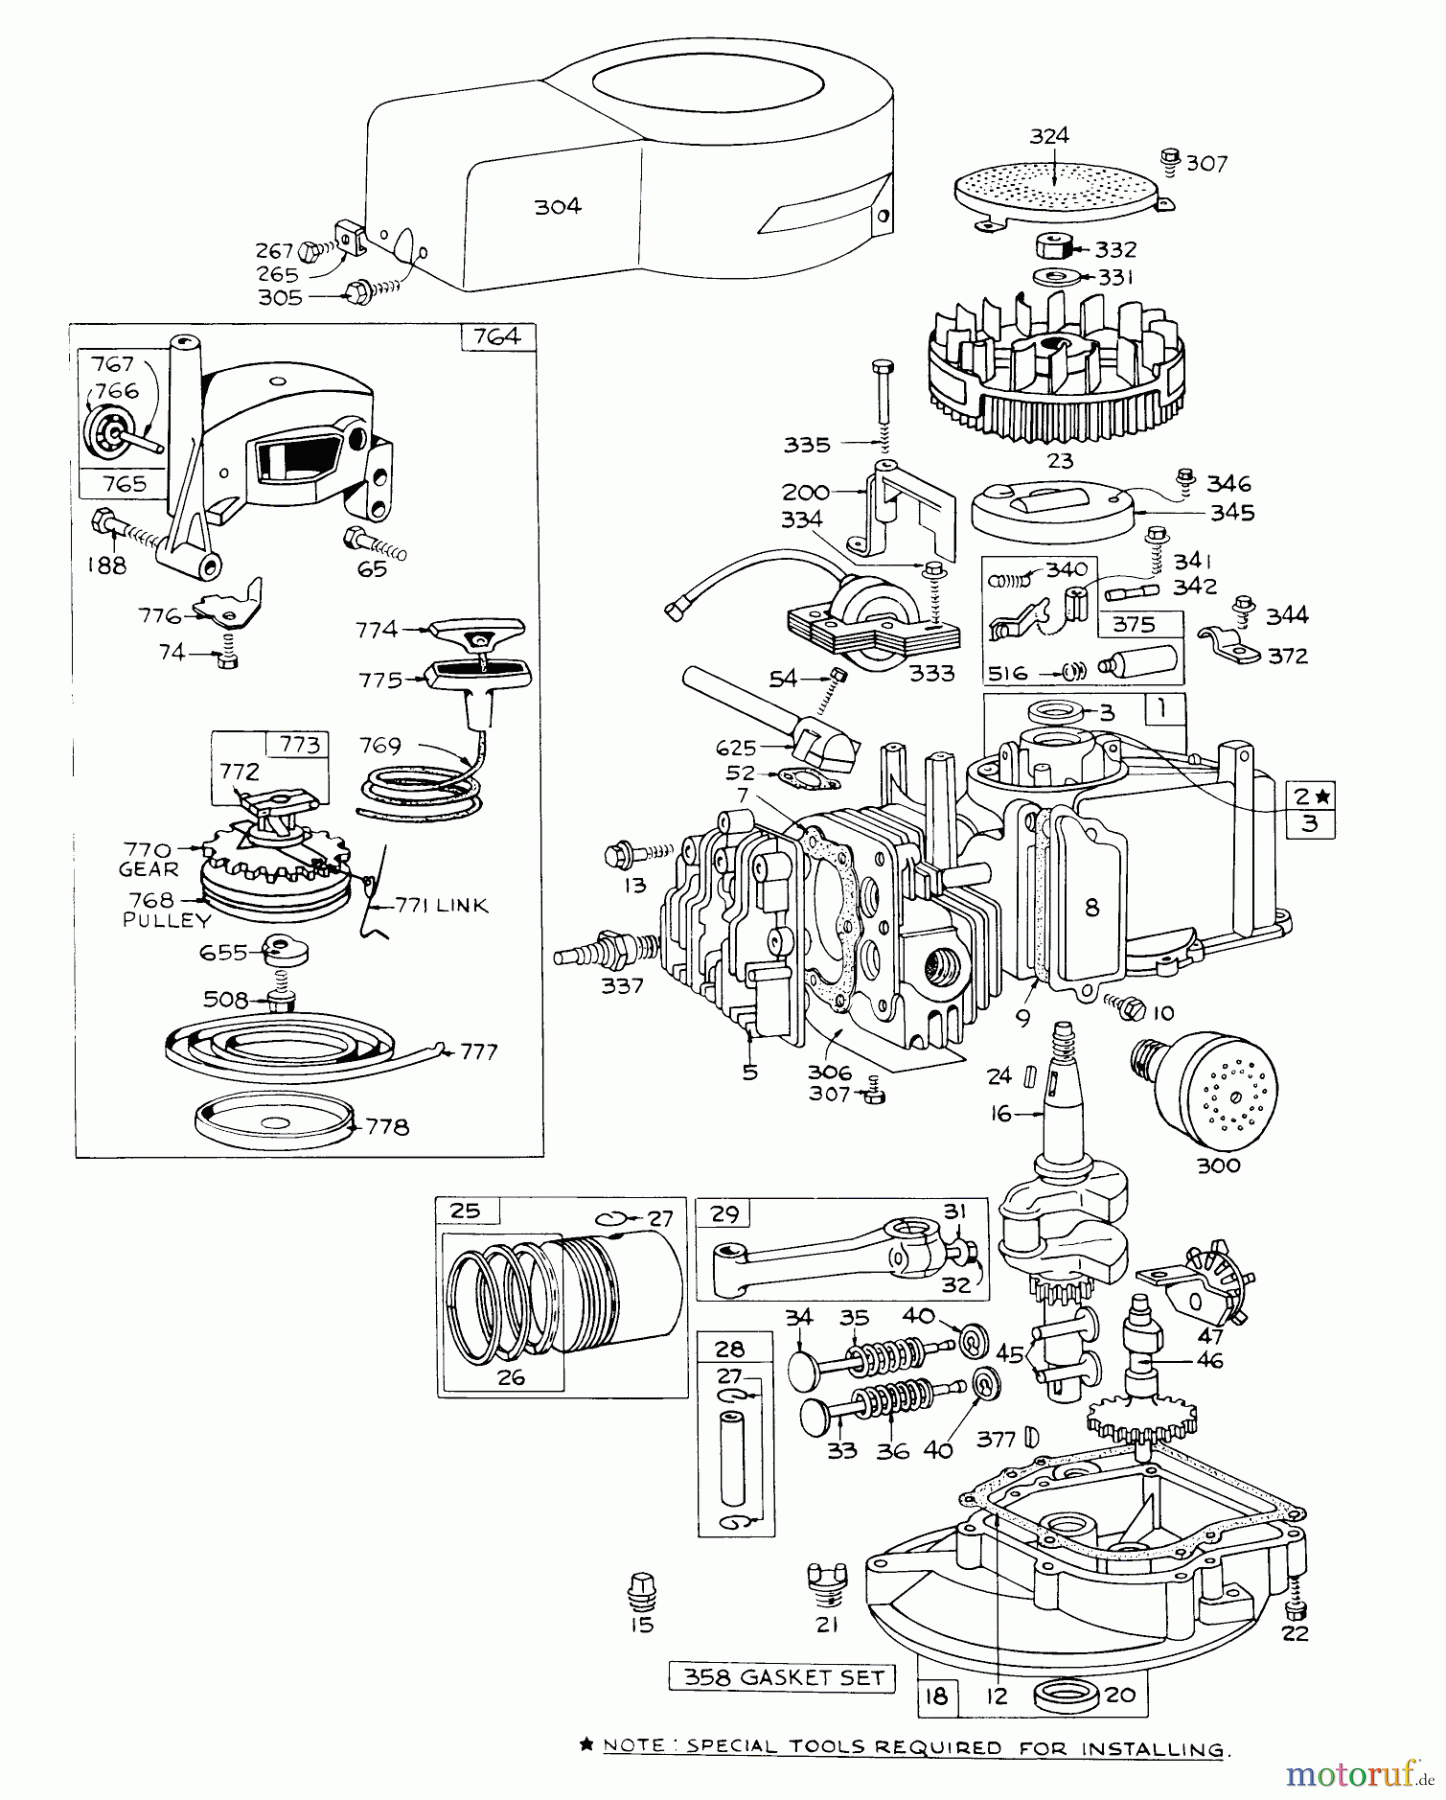  Toro Neu Mowers, Walk-Behind Seite 1 16222 - Toro Lawnmower, 1971 (1000001-1999999) ENGINE MODEL NO. 92508-0818 FOR 19